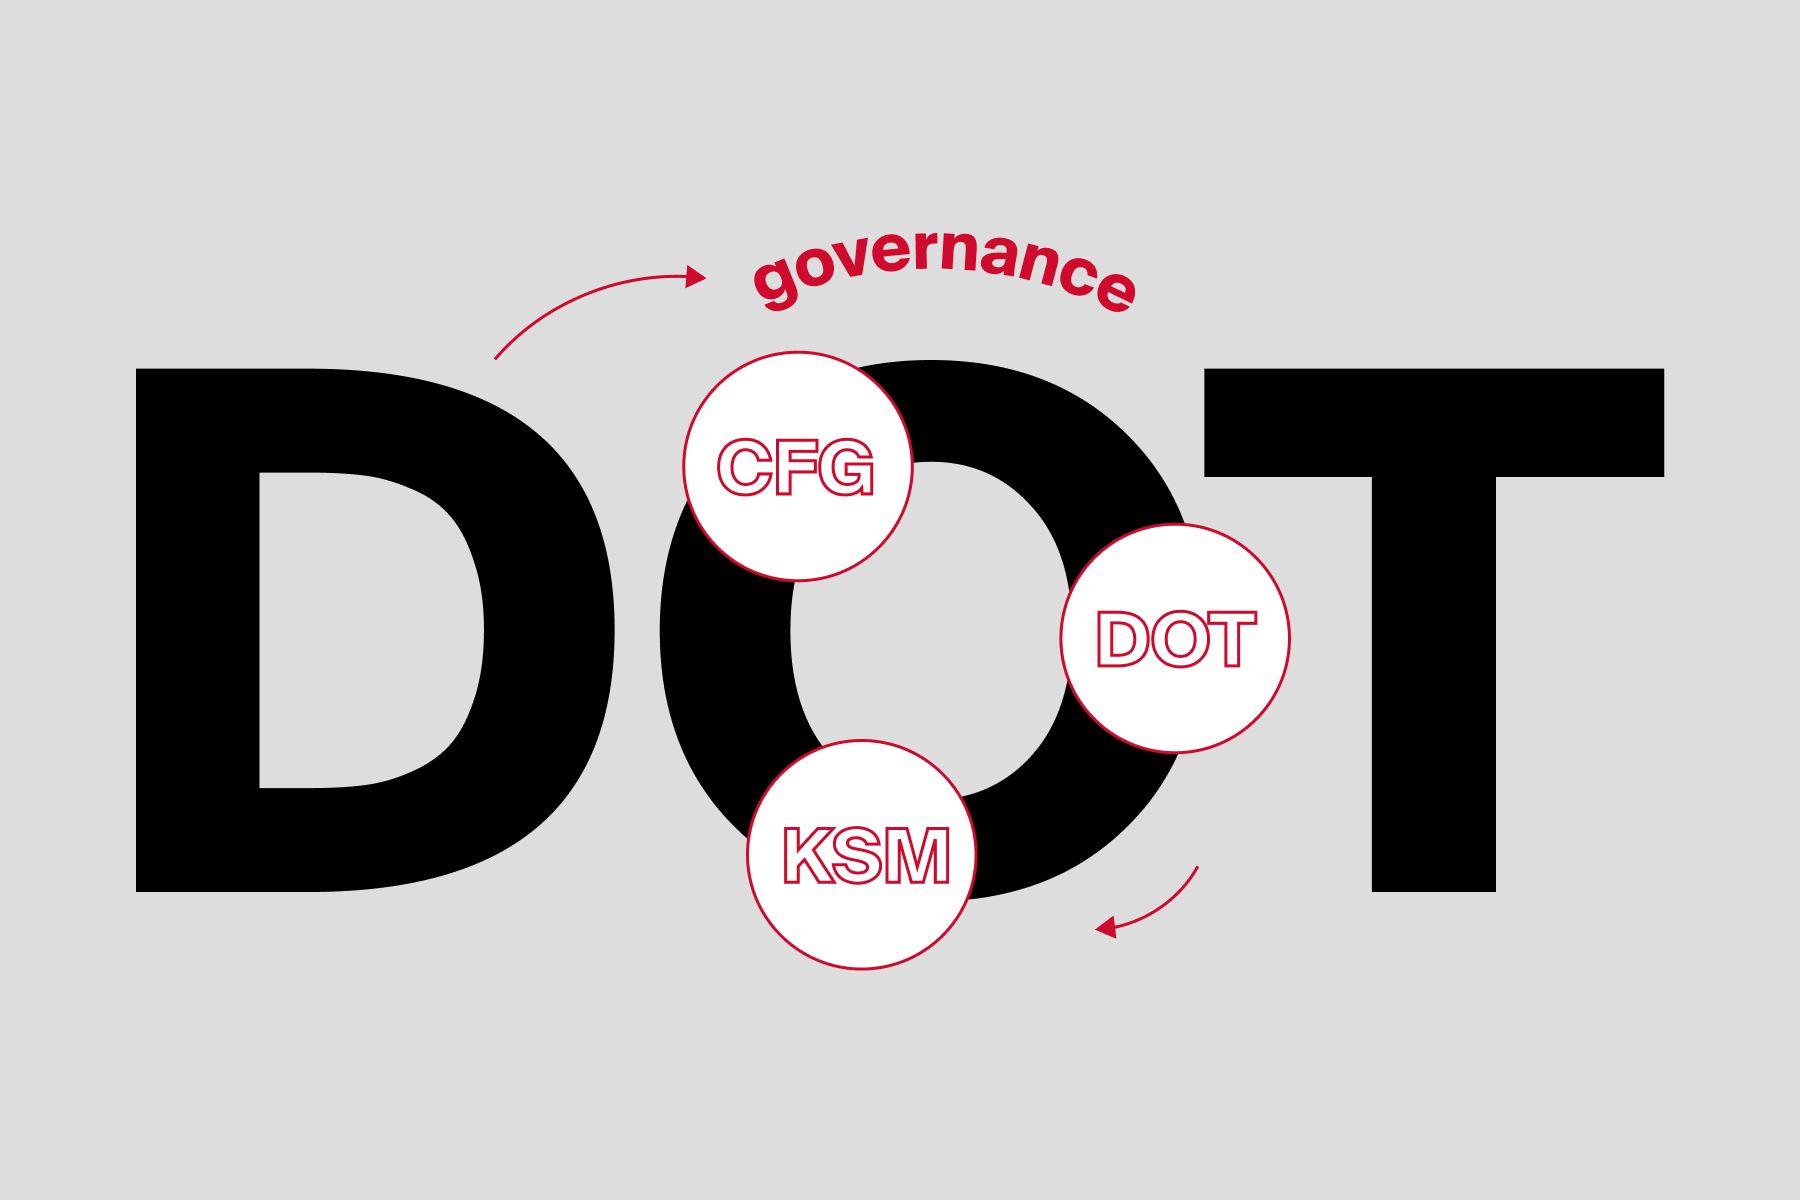 DOT-governance-article-image.jpg